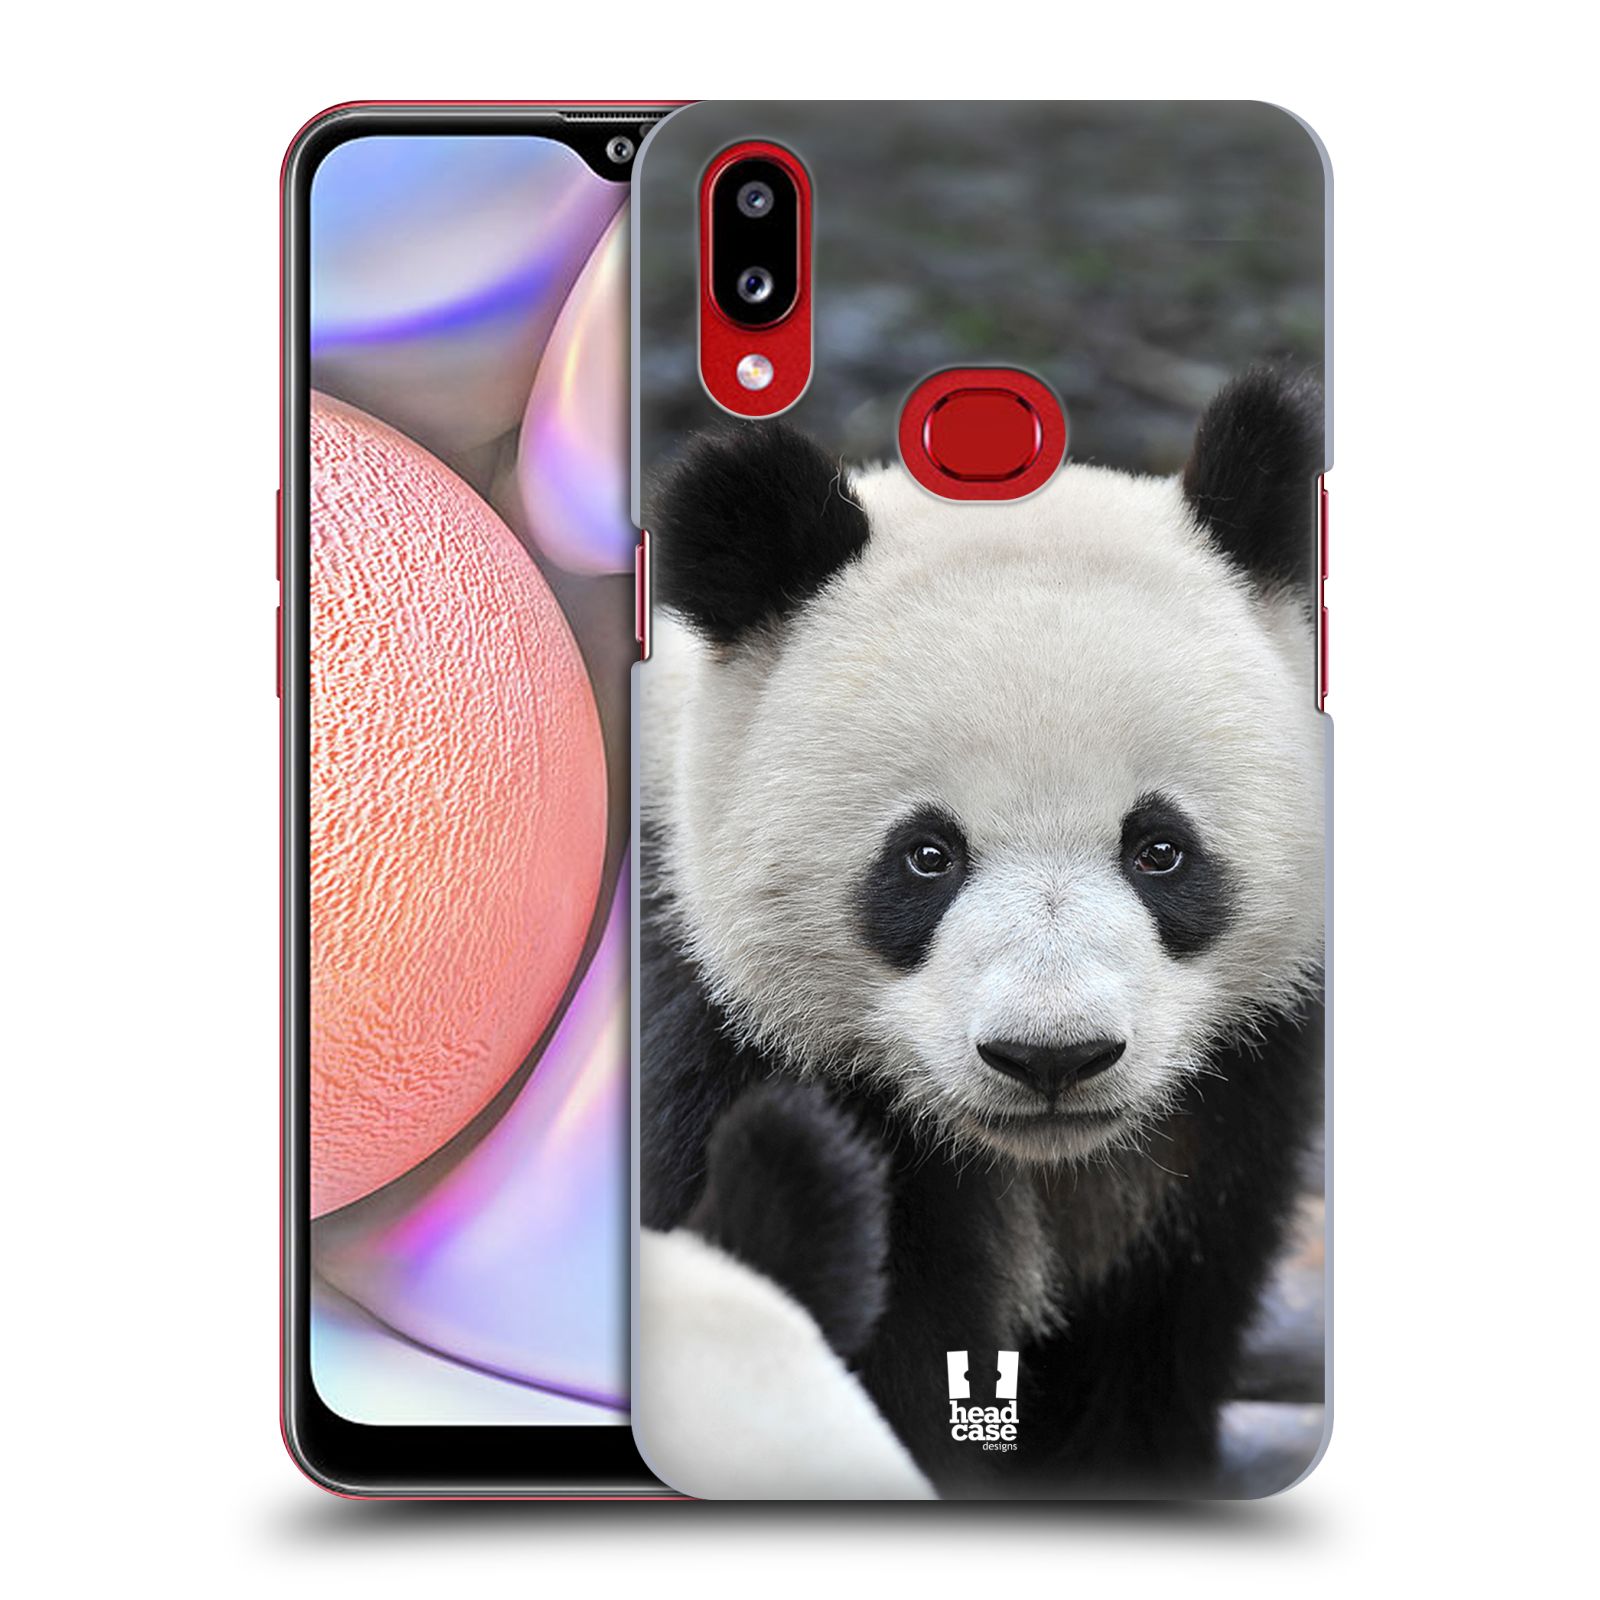 Zadní obal pro mobil Samsung Galaxy A10s - HEAD CASE - Svět zvířat medvěd panda